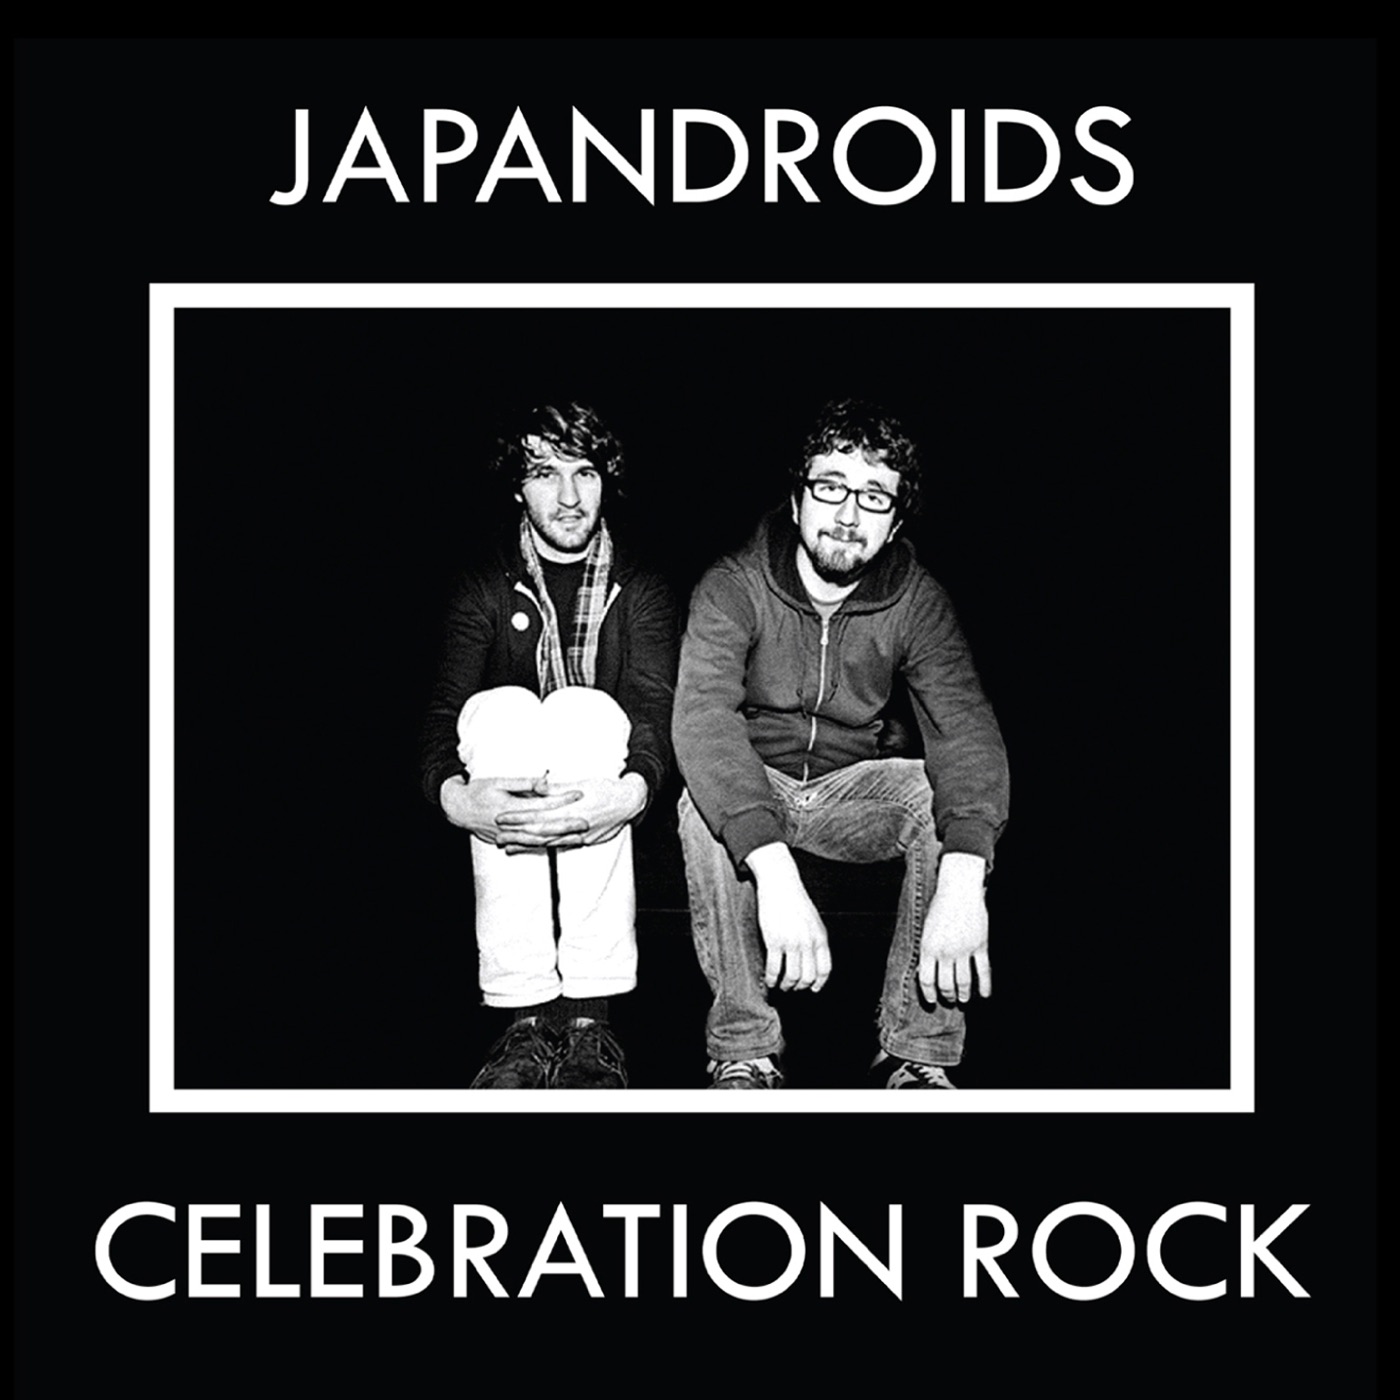 Celebration Rock by Japandroids